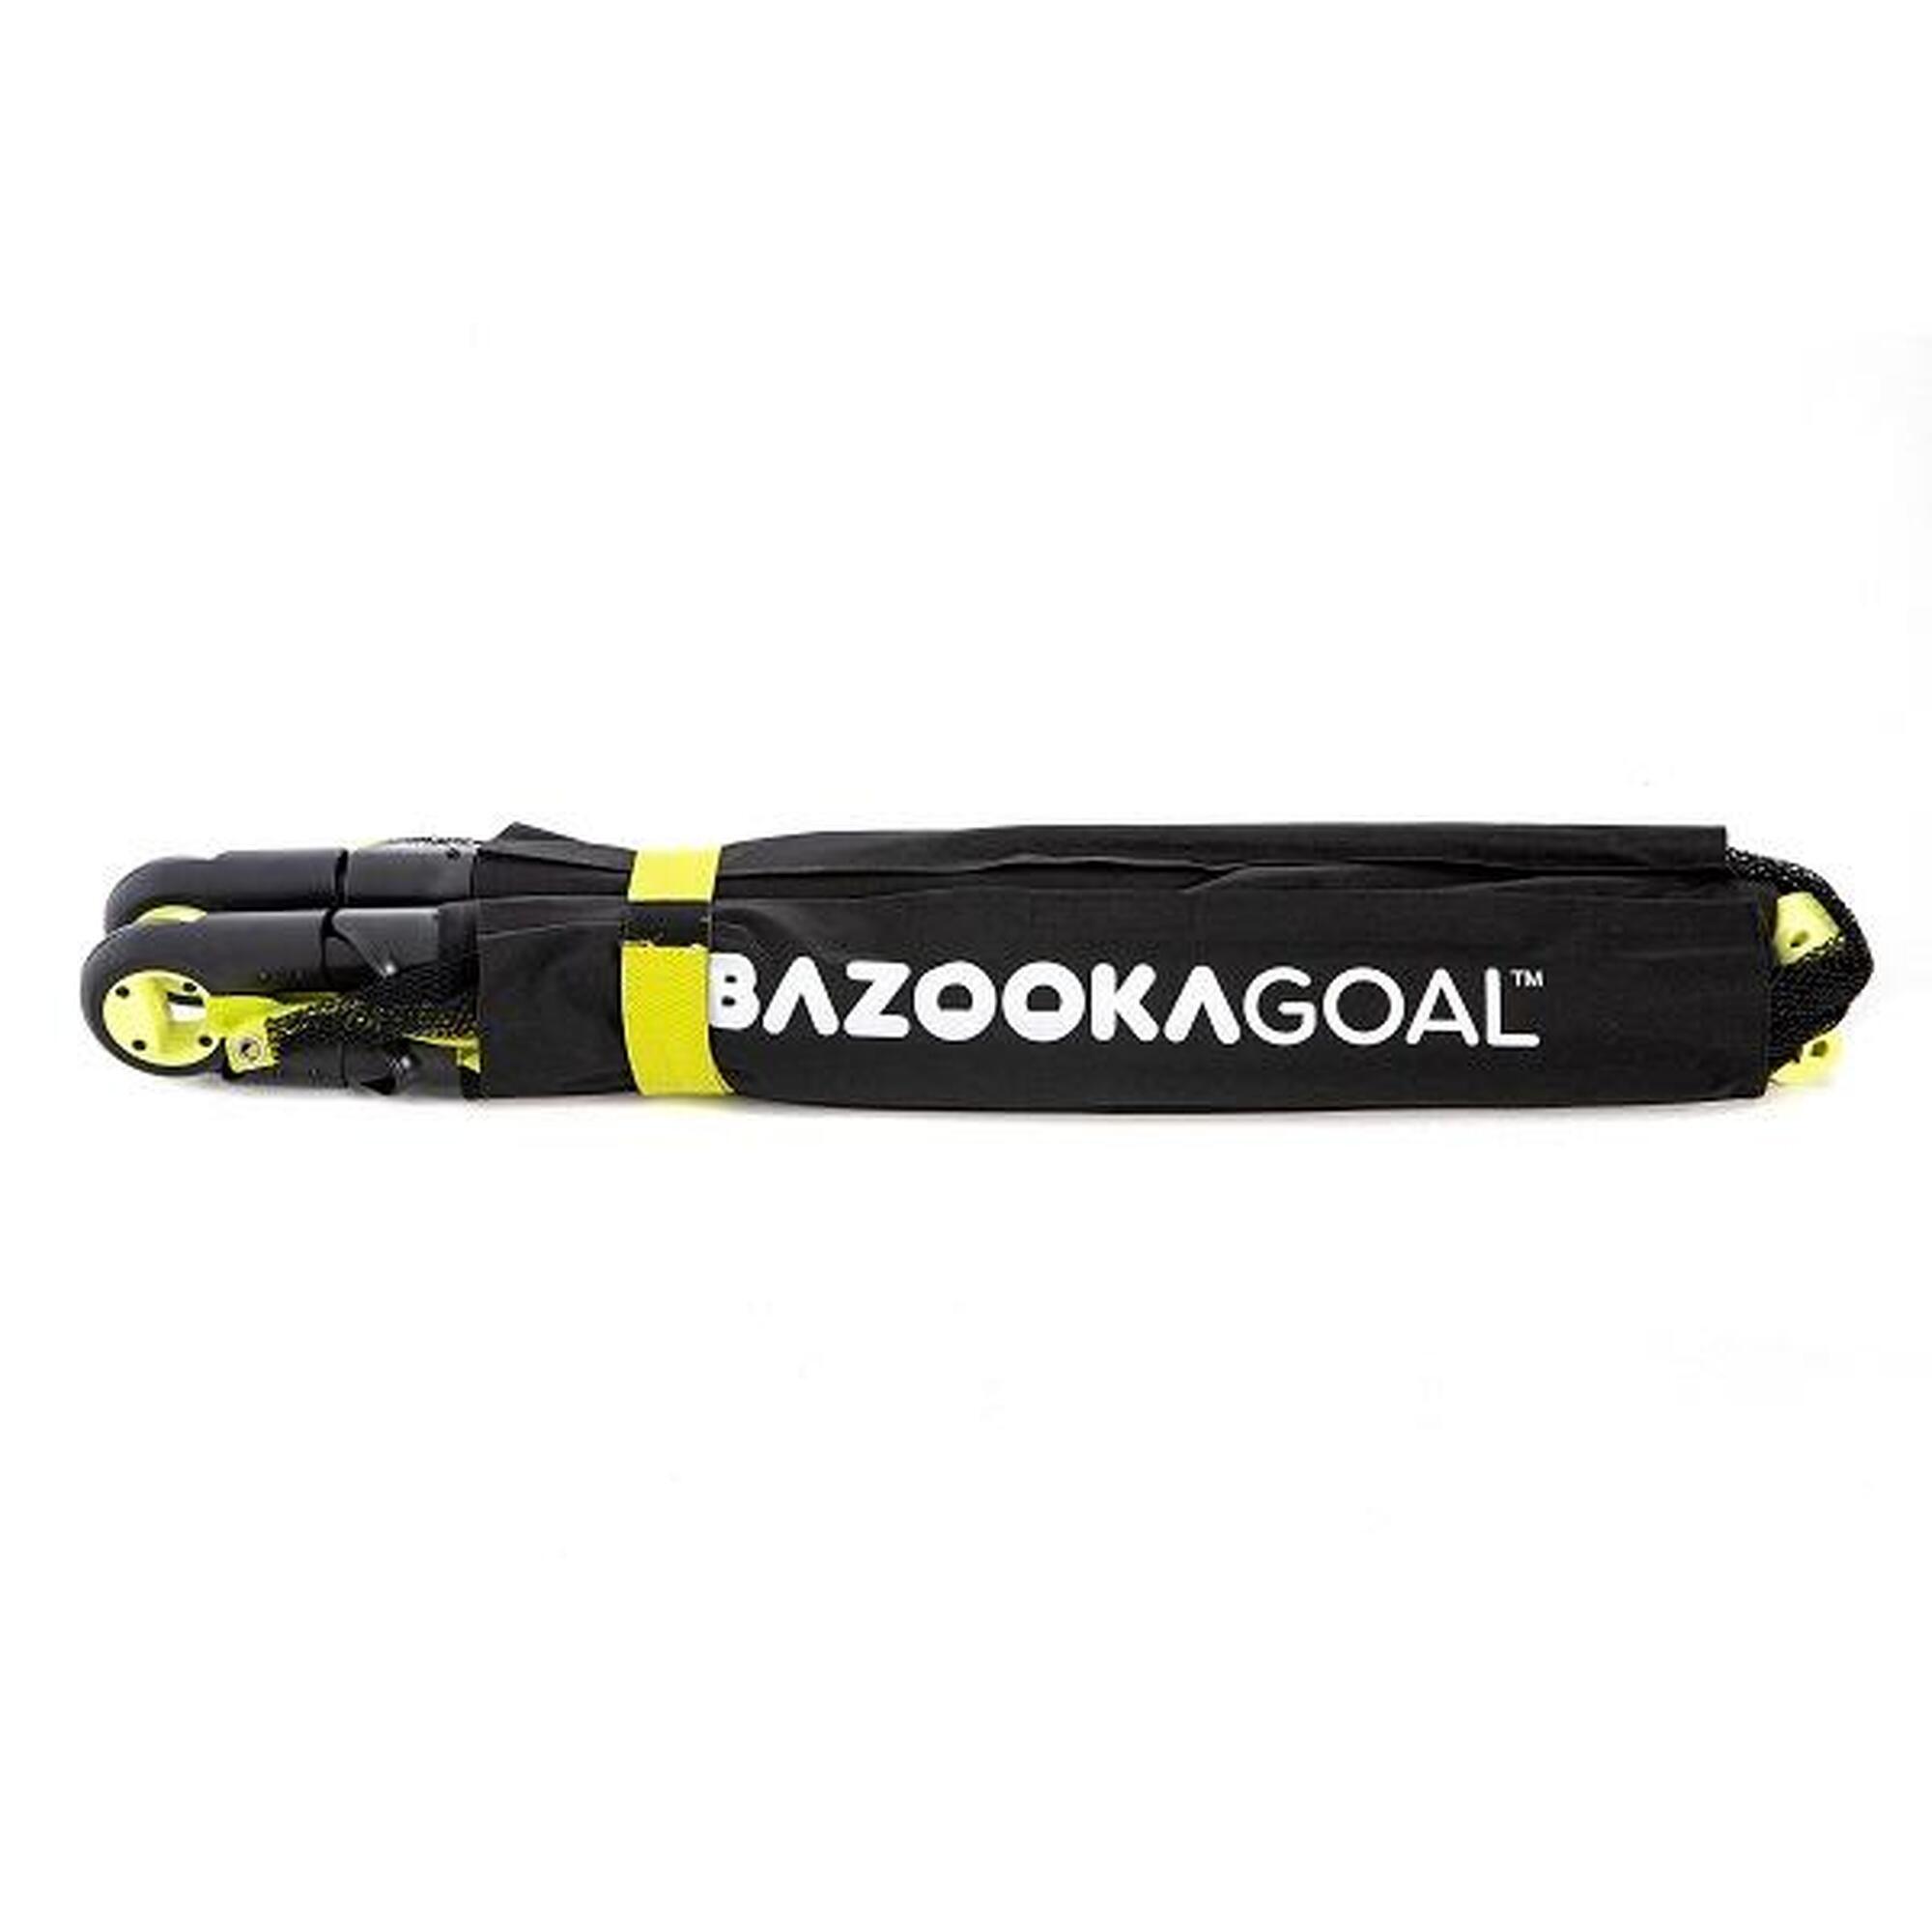 Składana bramka do piłki nożnej BazookaGoal 180x90 cm XL